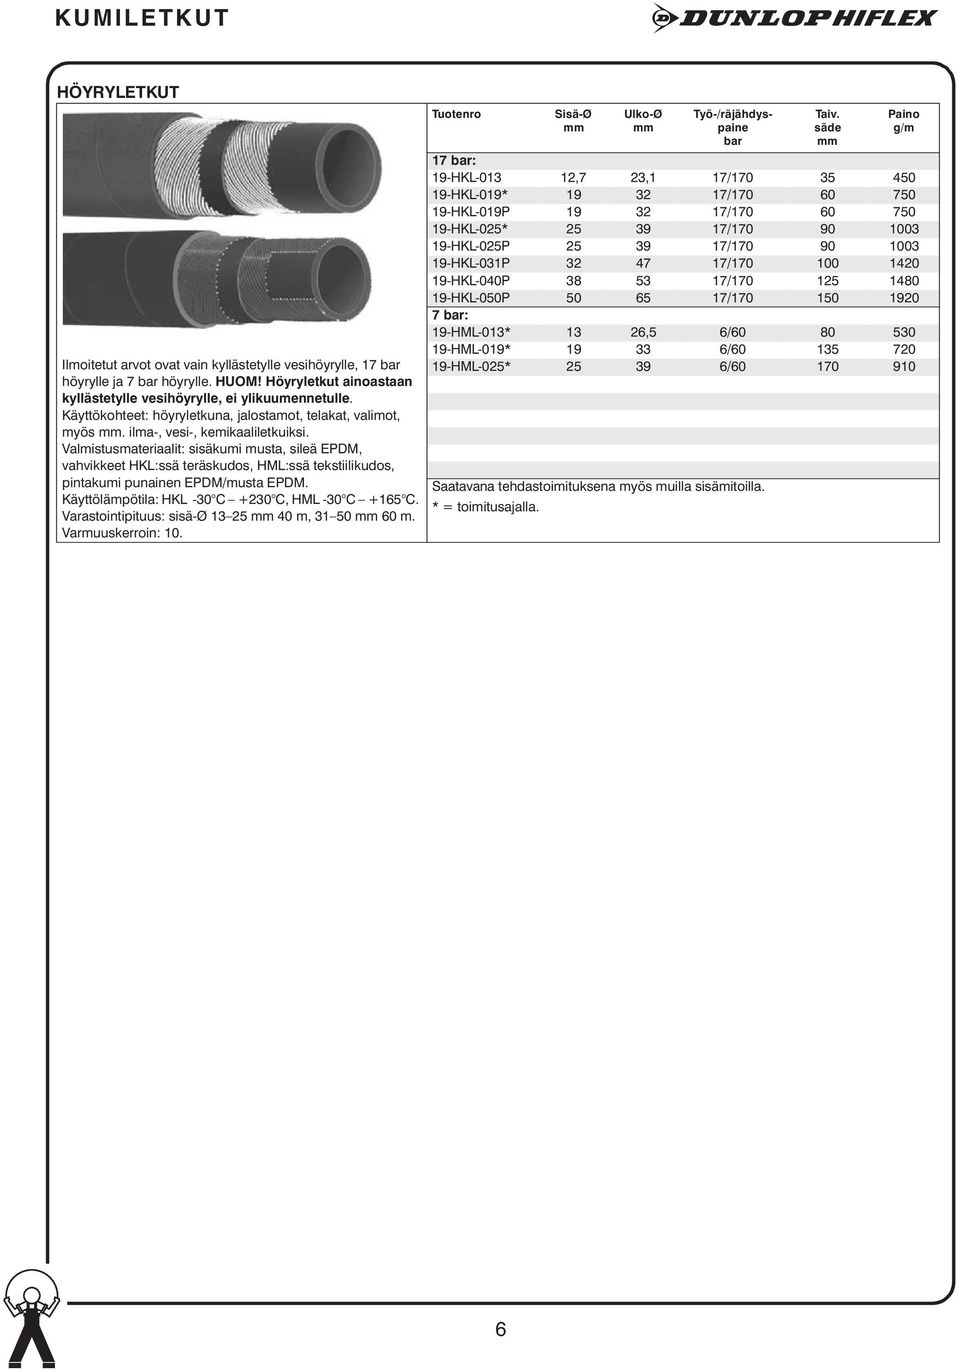 Valmistusmateriaalit: sisäkumi musta, sileä EPDM, vahvikkeet HKL:ssä teräskudos, HML:ssä tekstiilikudos, pintakumi punainen EPDM/musta EPDM. Käyttölämpötila: HKL -30 C +230 C, HML -30 C +165 C.